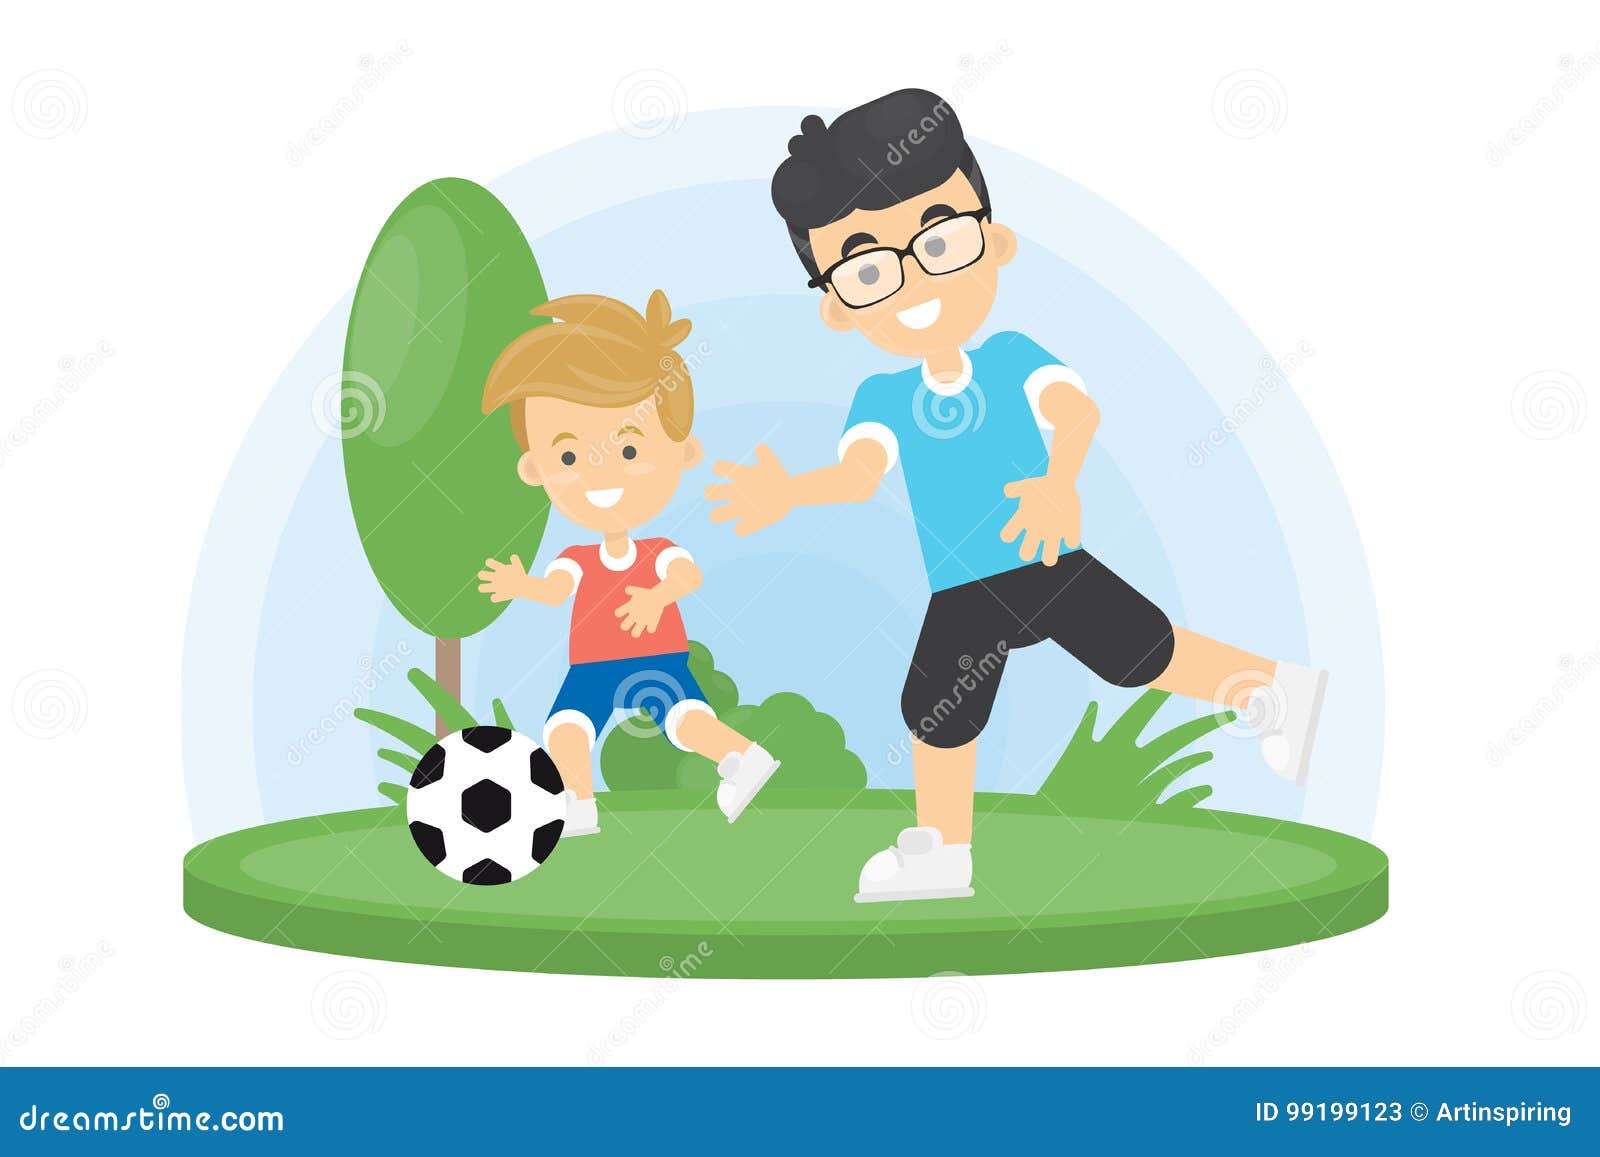 Папа играет в футбол. Отец и сын играют рисунок. Папа с сыном играют в футбол. Папа играет в футбол иллюстрация. Отец играющий в футбол рисунок.